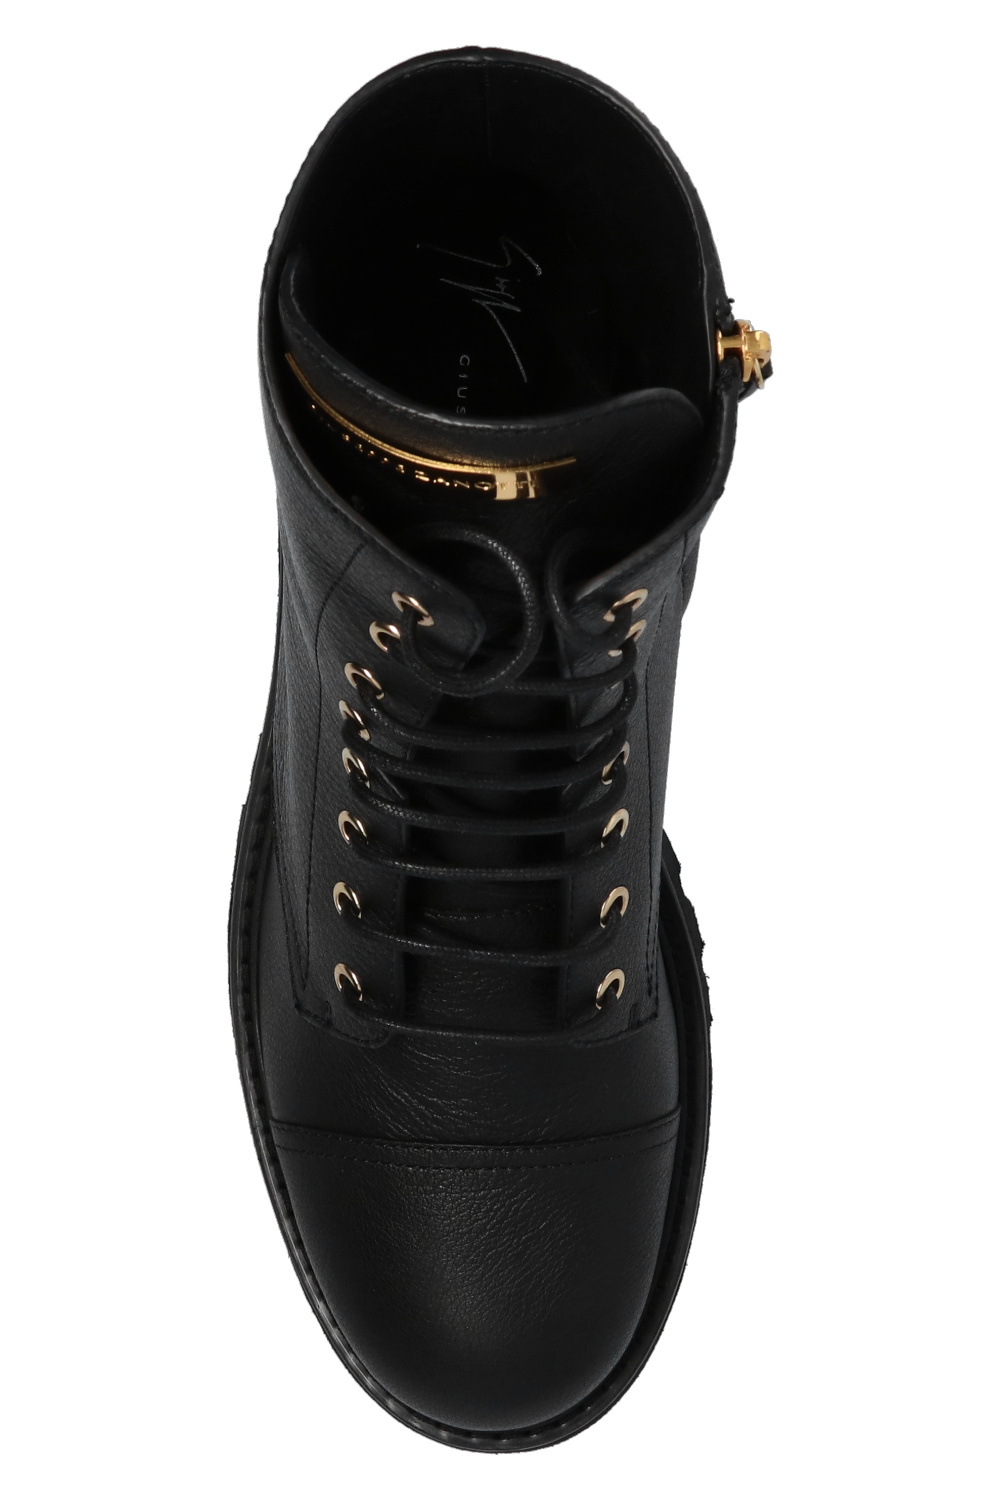 Giuseppe Zanotti Leather combat boots